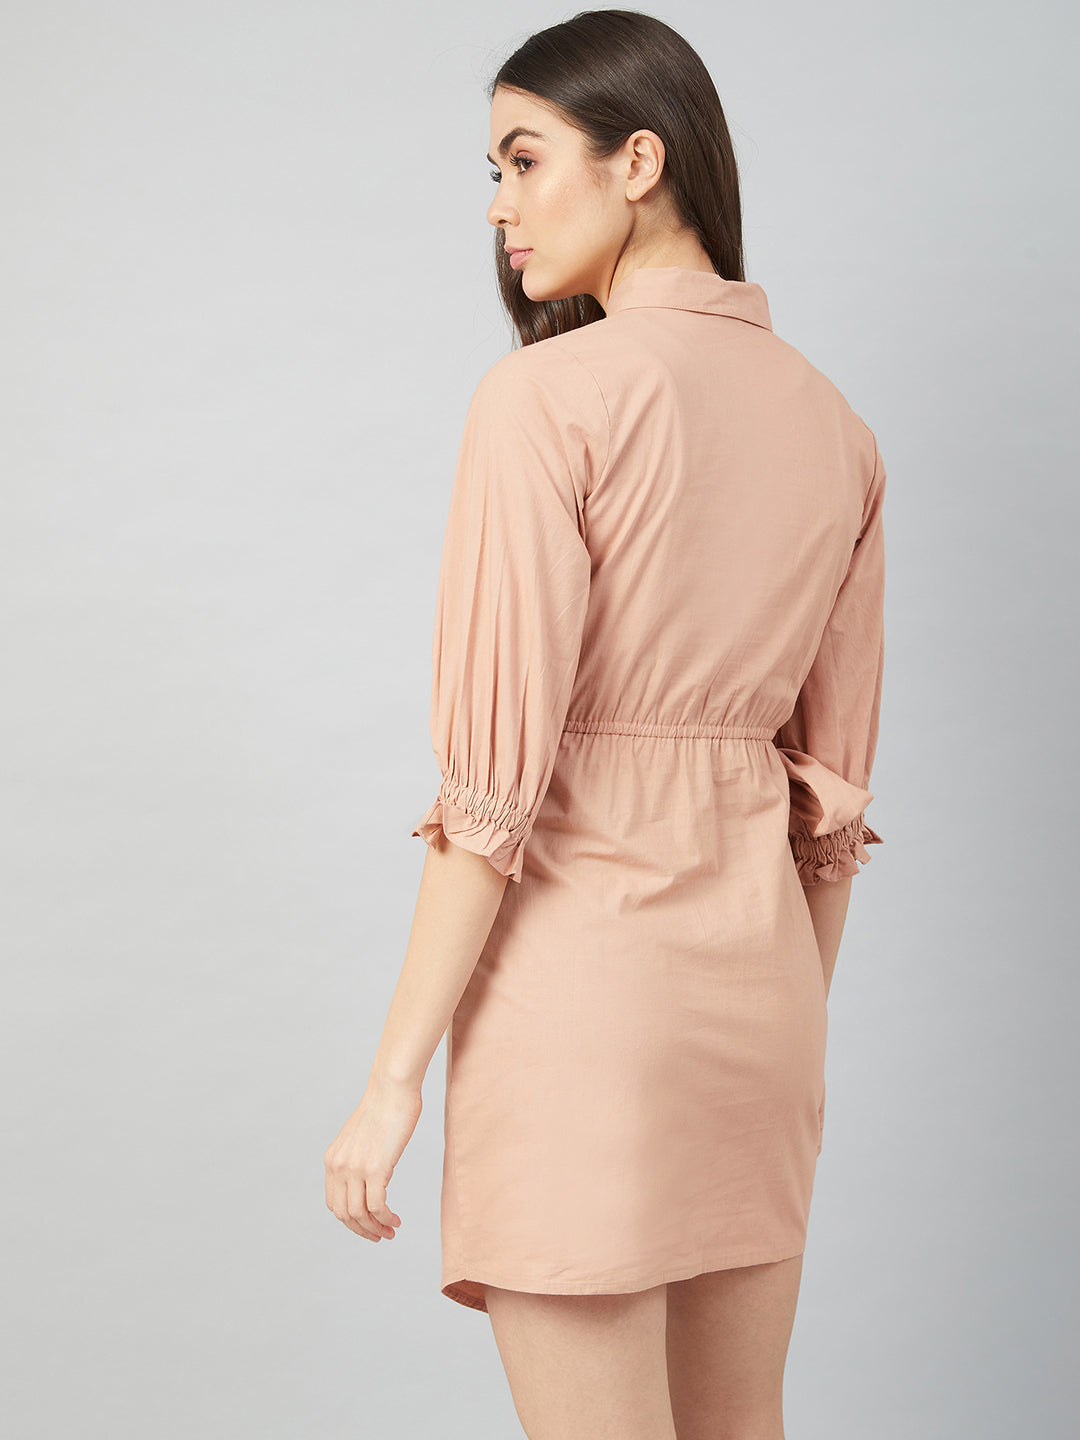 Athena Beige- Coloured Cotton Shirt Dress - Athena Lifestyle